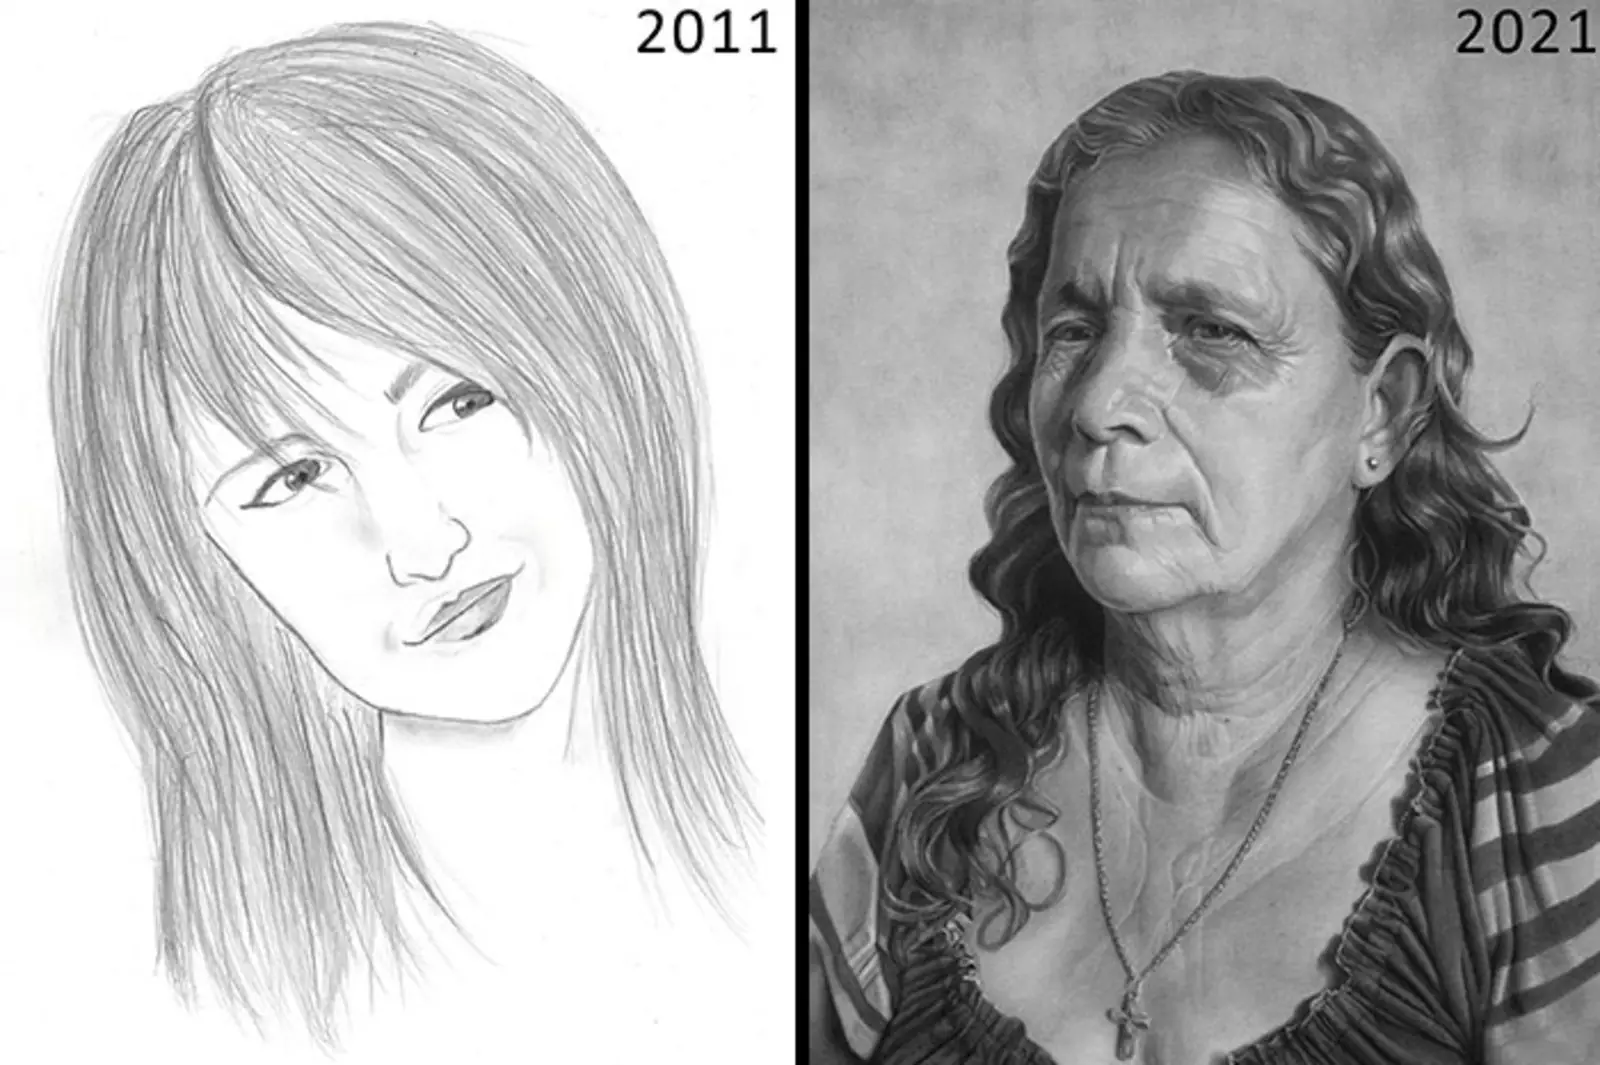 "Первый портрет, который я когда-либо делал в 2011 году, по сравнению с самым последним портретом 2021 года, это был долгий путь".